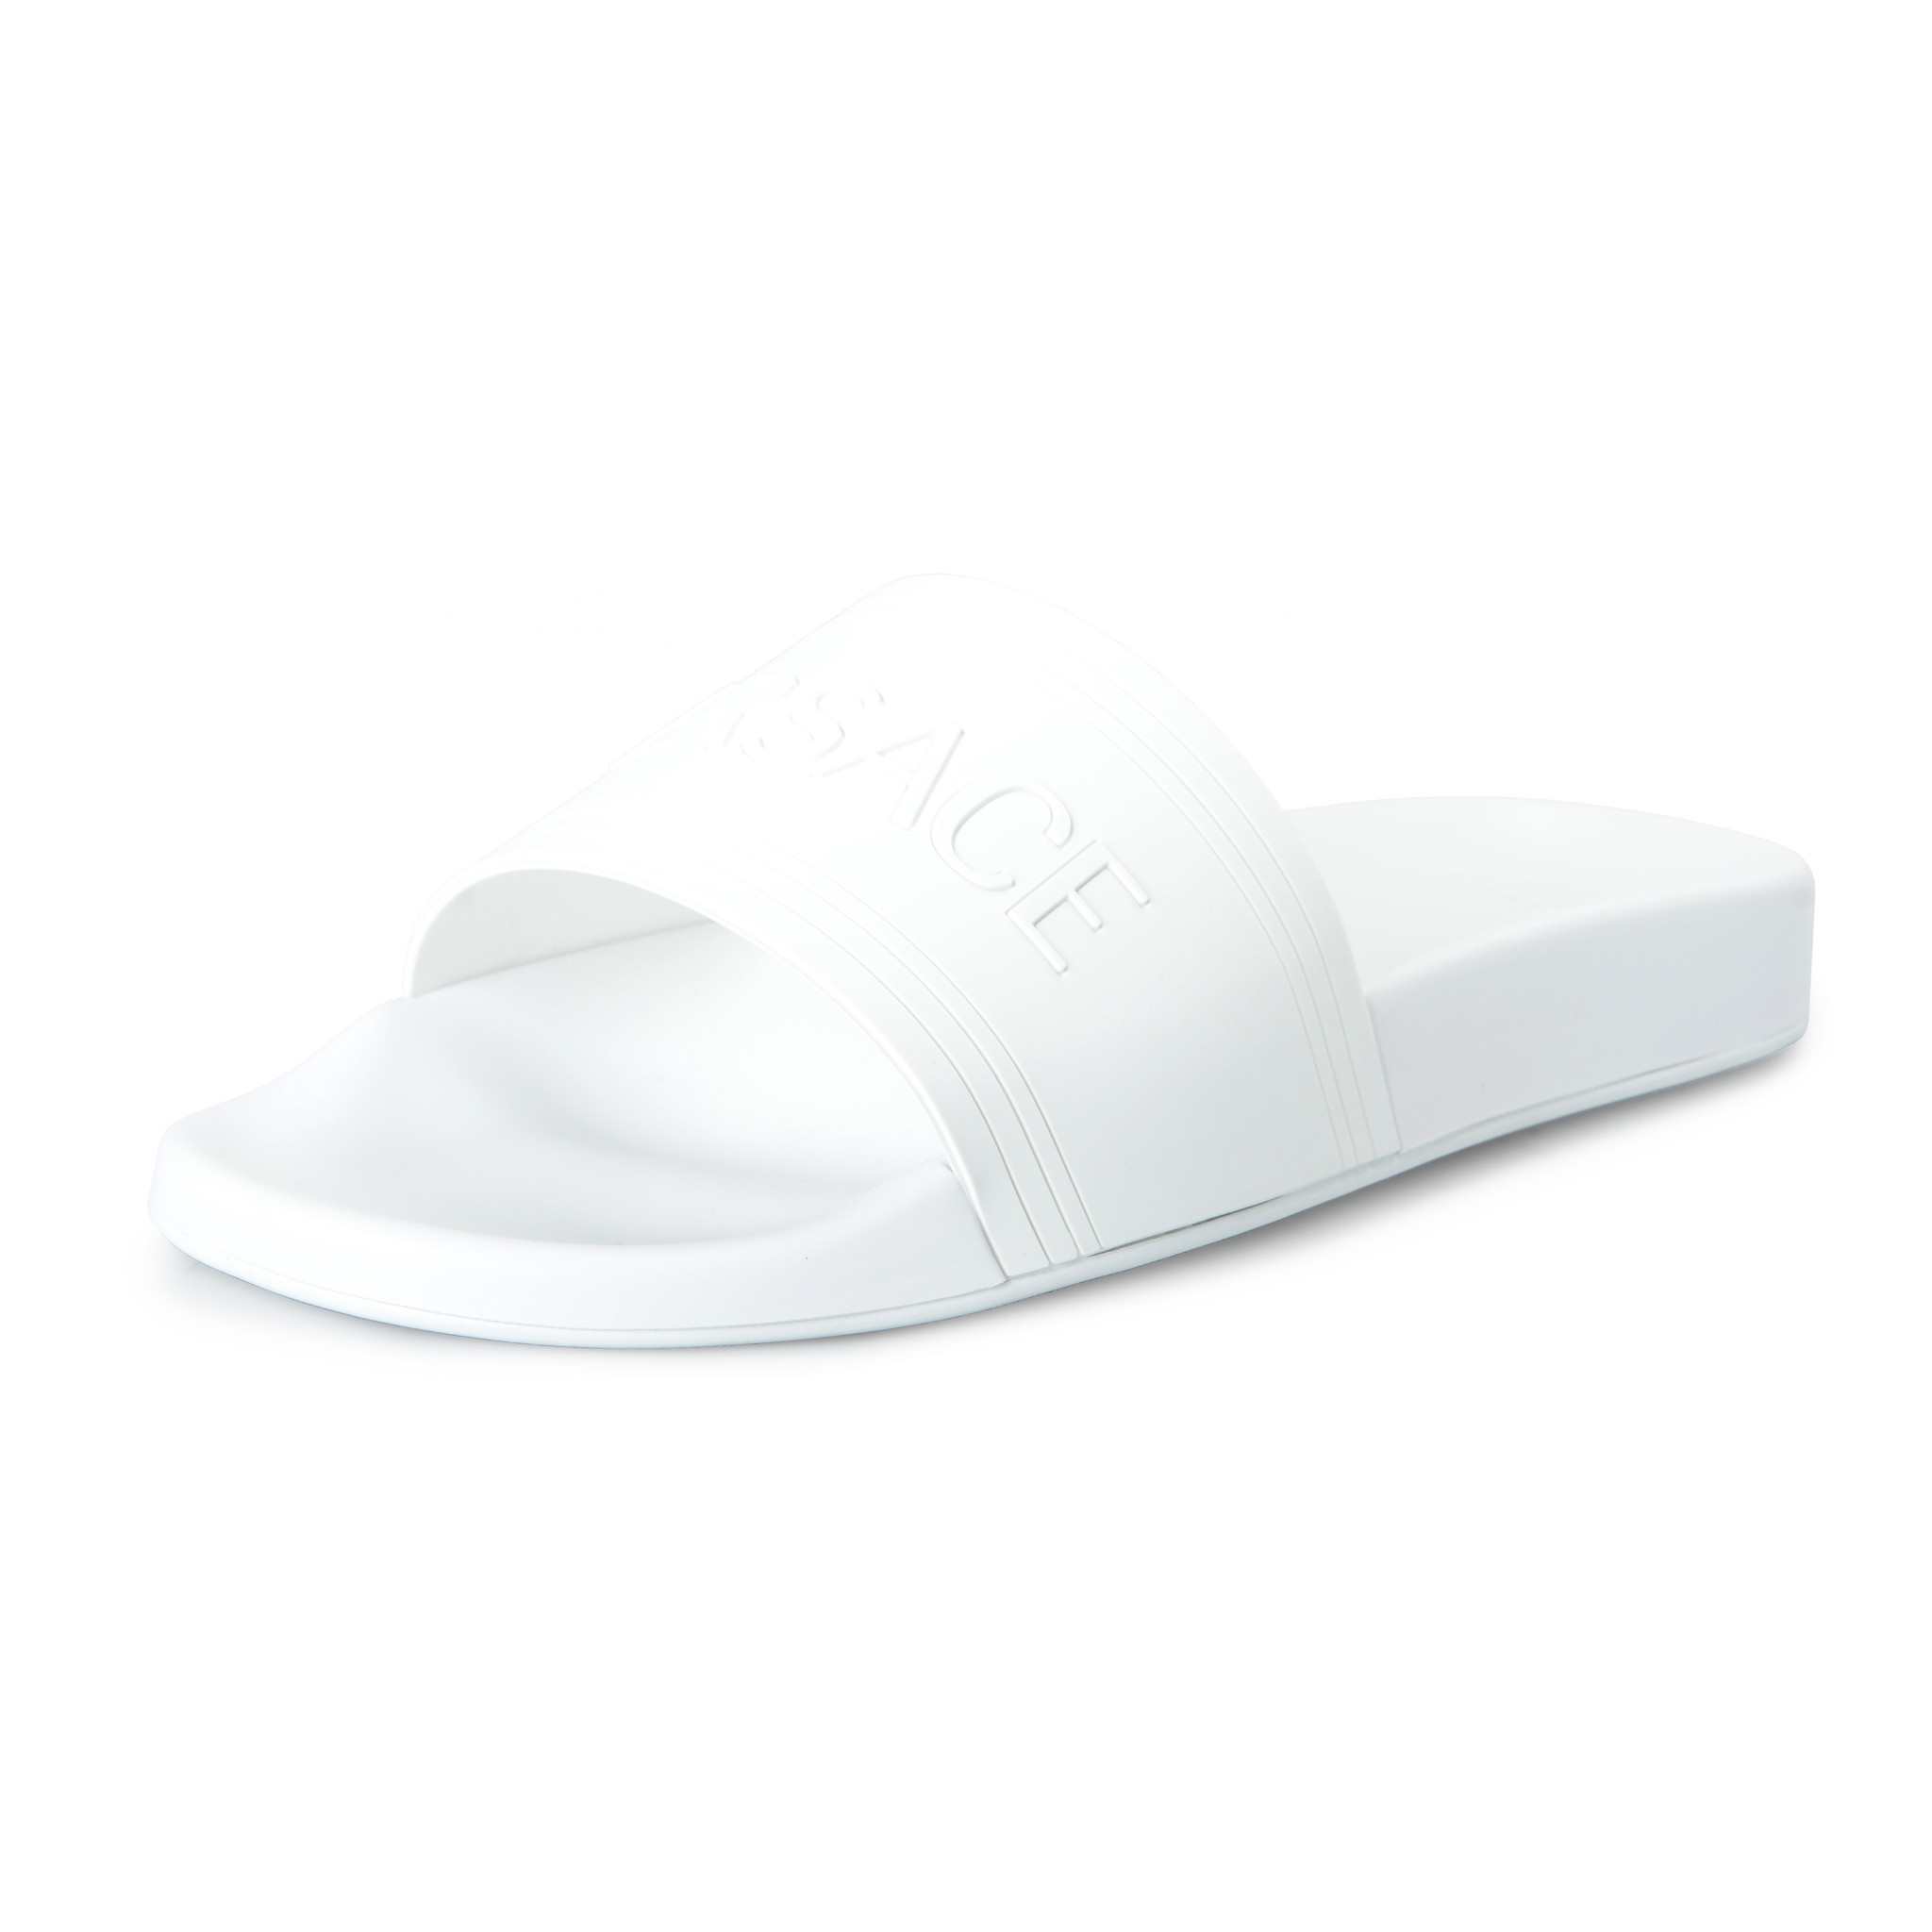 White Rubber Flip Flops Shoes sz 9 